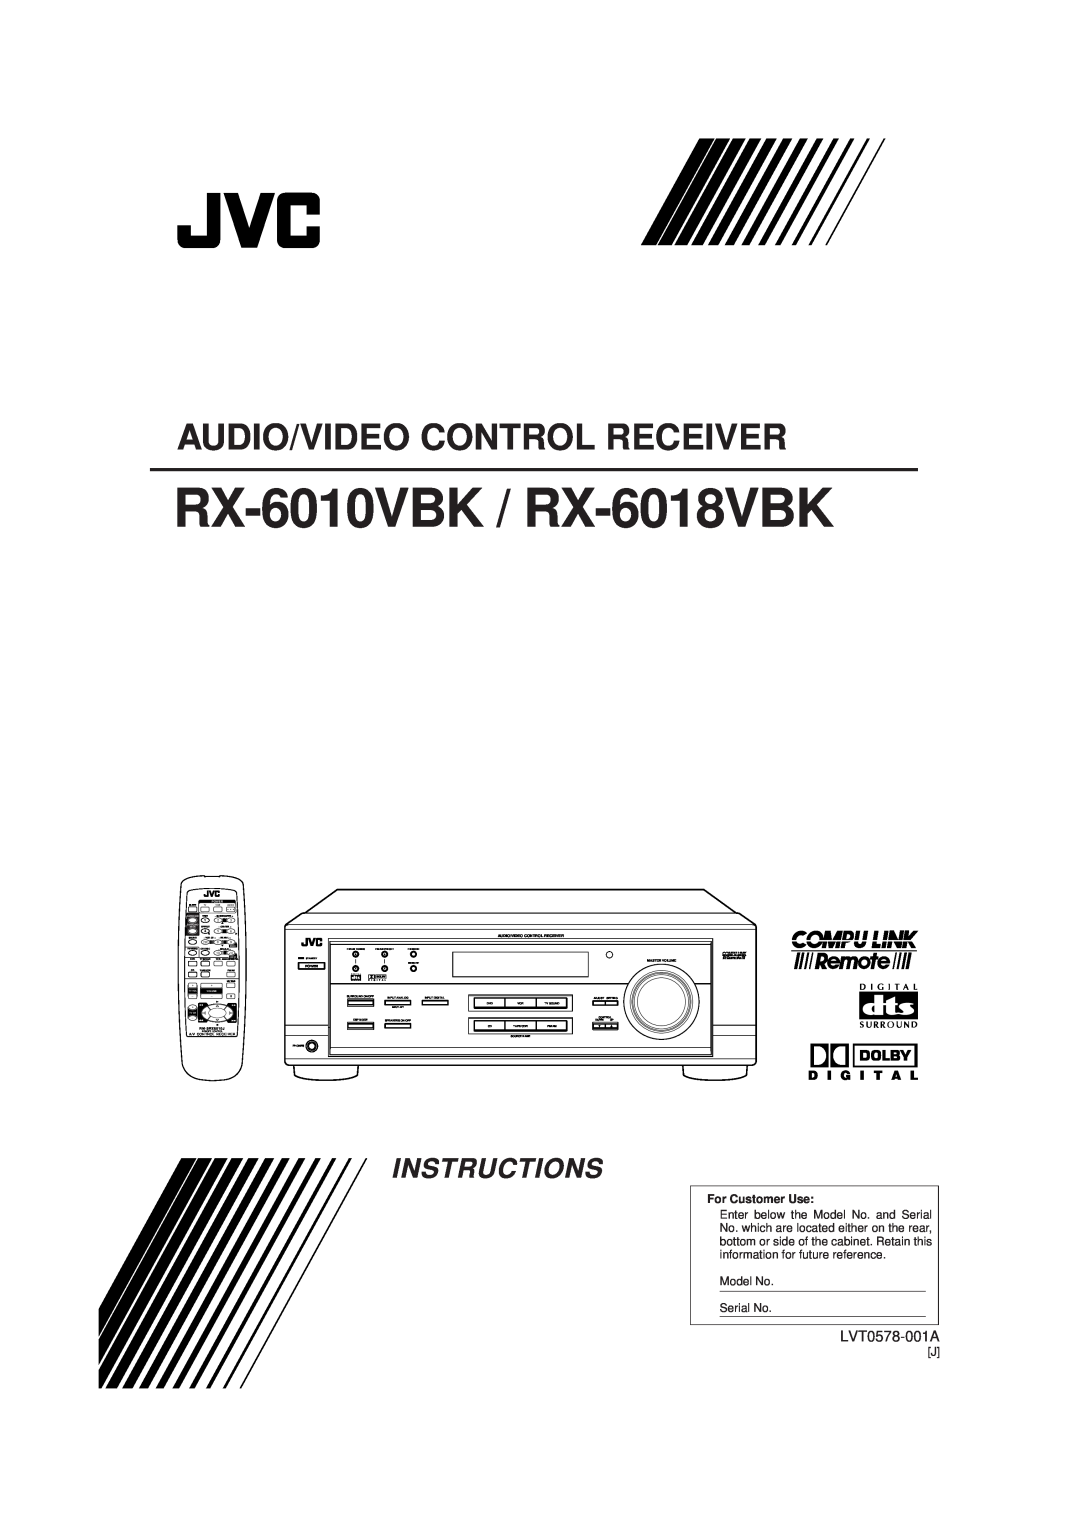 JVC manual RX-6010VBK / RX-6018VBK, Audio/Video Control Receiver, Instructions, LVT0578-001A, D I G I T A L, Power 